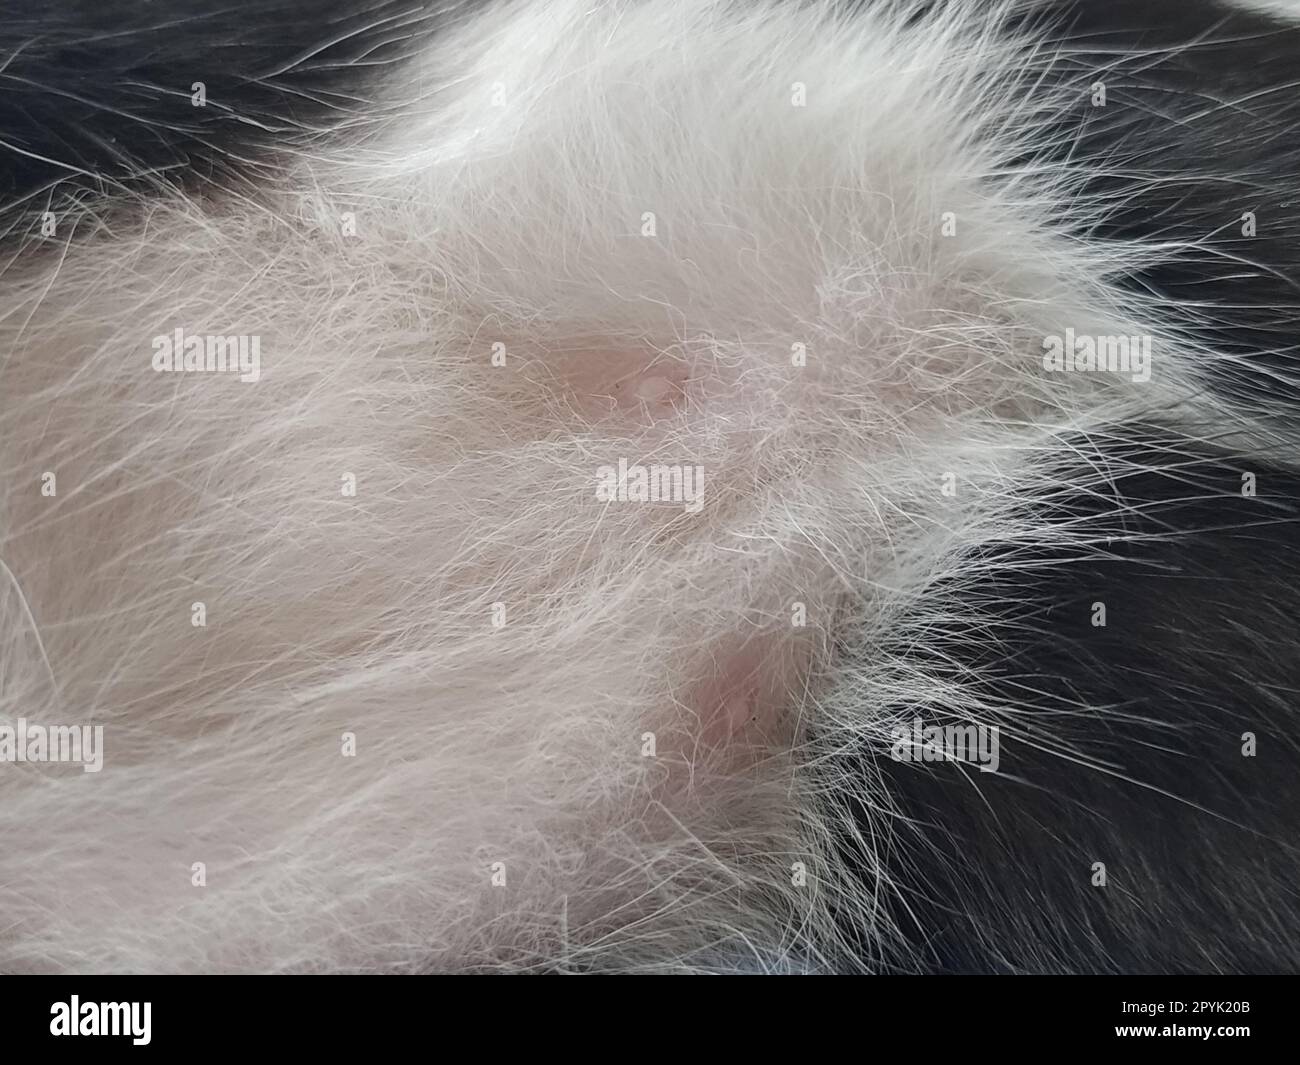 Katzennippel in der Nahaufnahme. Zwei rosa Nippel auf dem Bauch eines jungen männlichen Kätzchens. Weiß-schwarze Wolle um die Milchstäbe des Tieres. Stockfoto